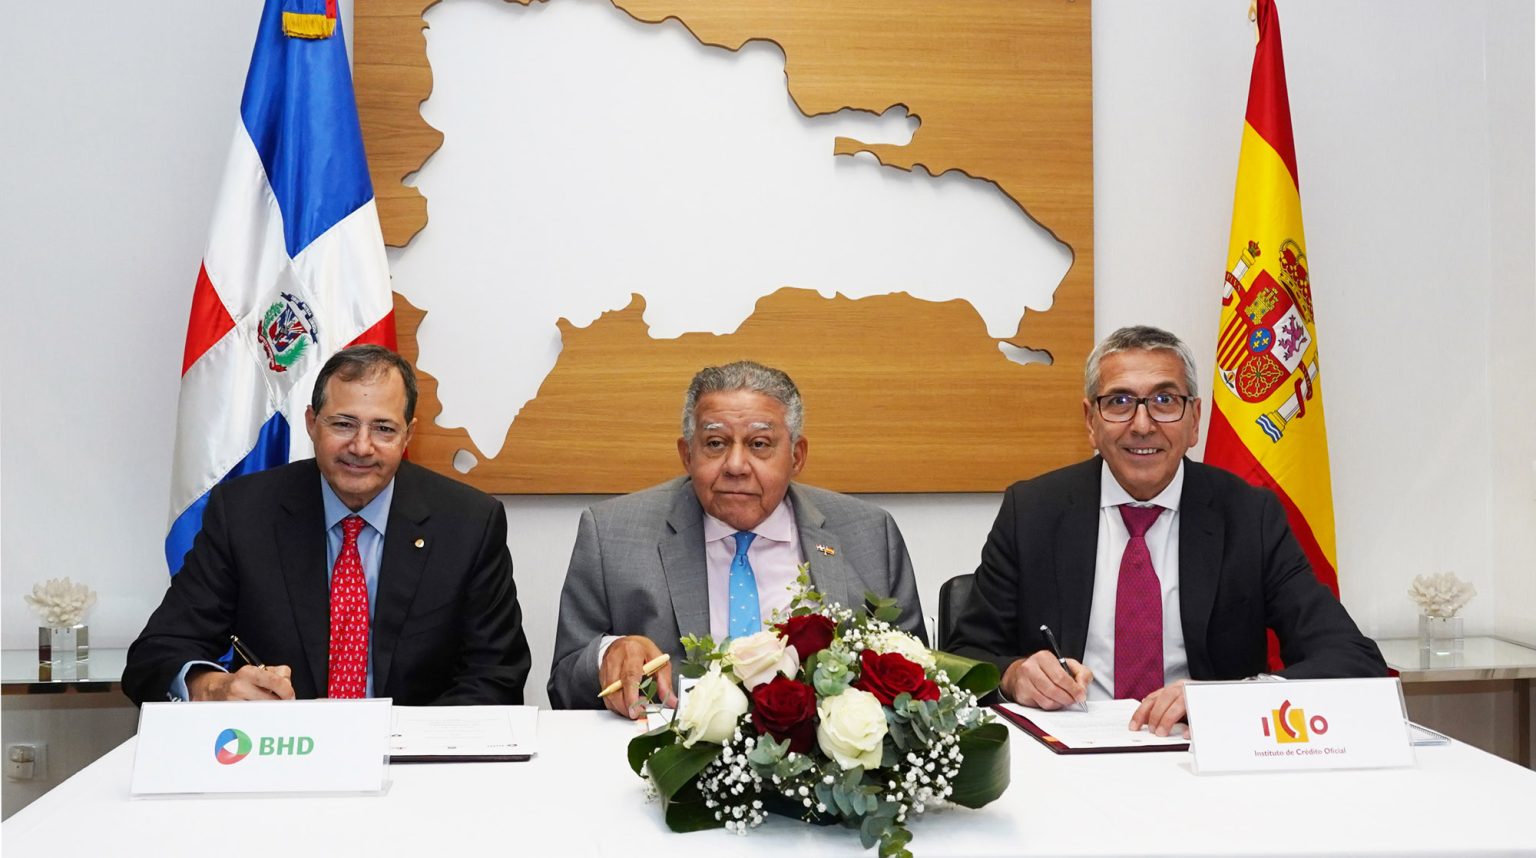 BHD y el ICO ratifican acuerdo para incentivar inversion espanola en Republica Dominicana